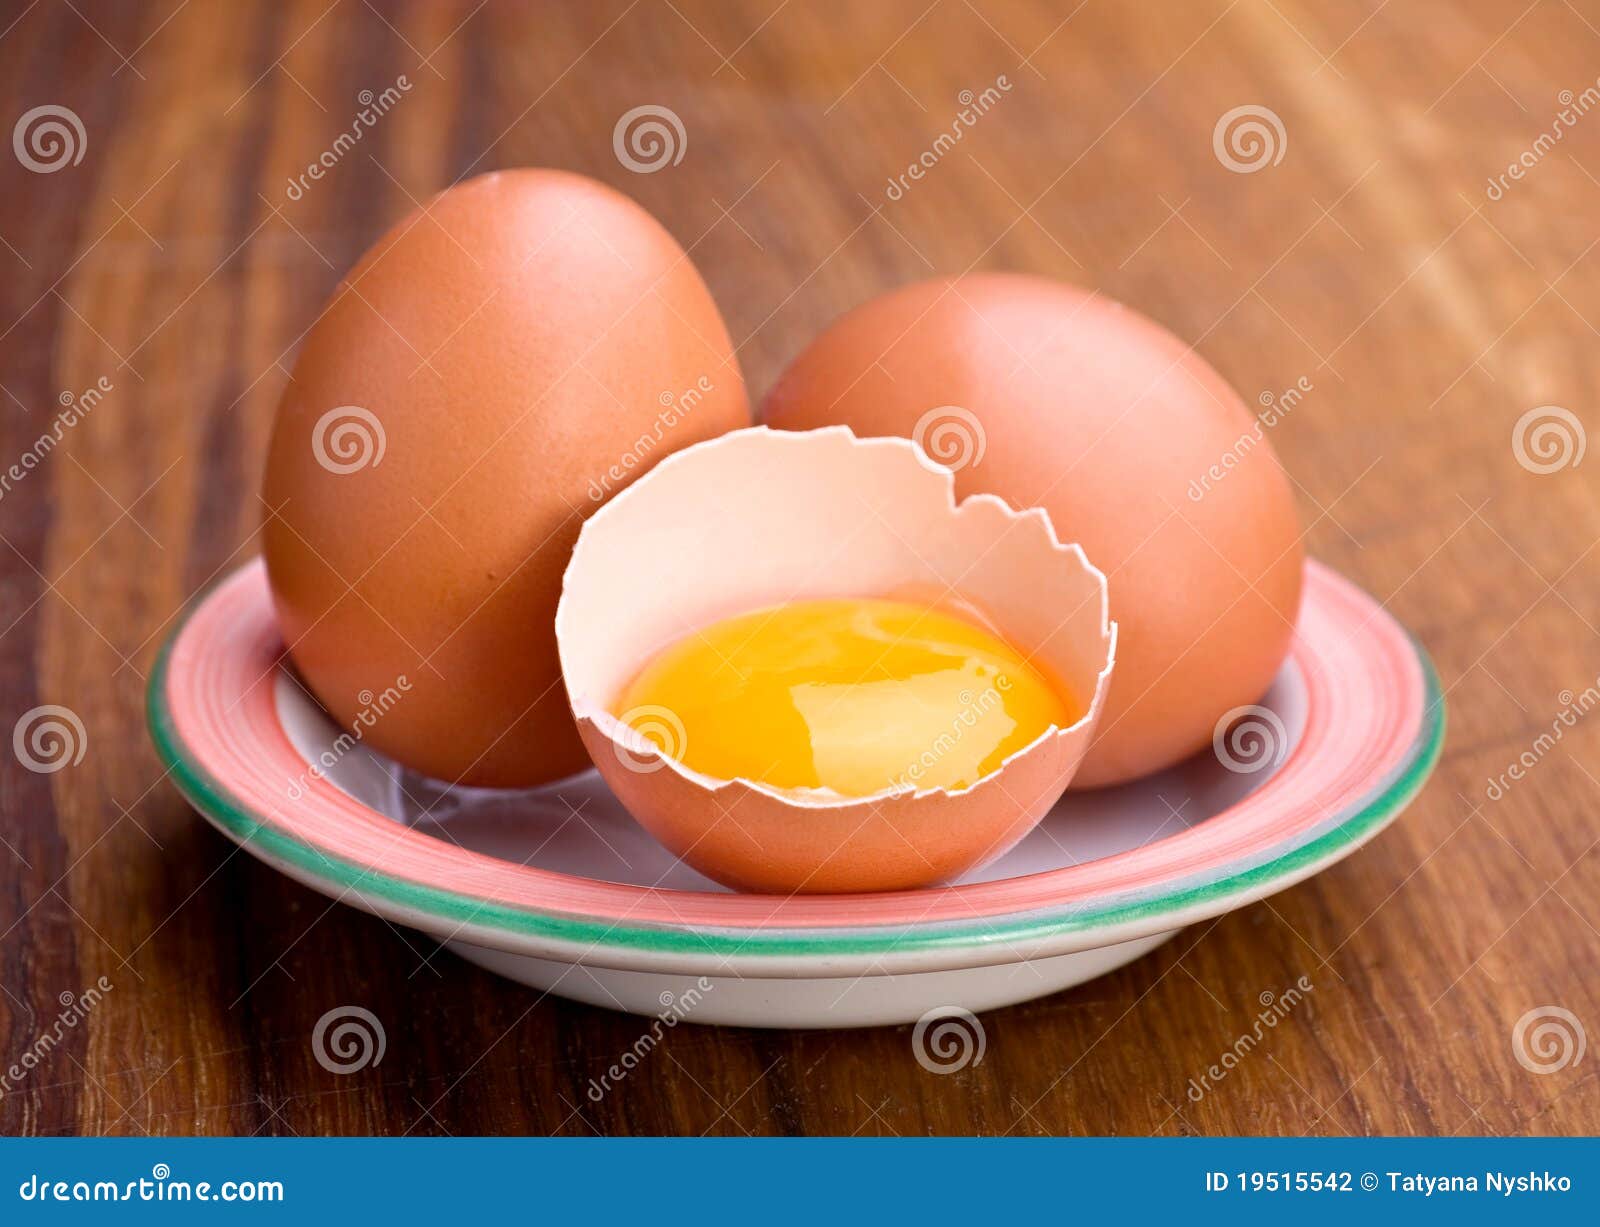 chicken egg and yolk